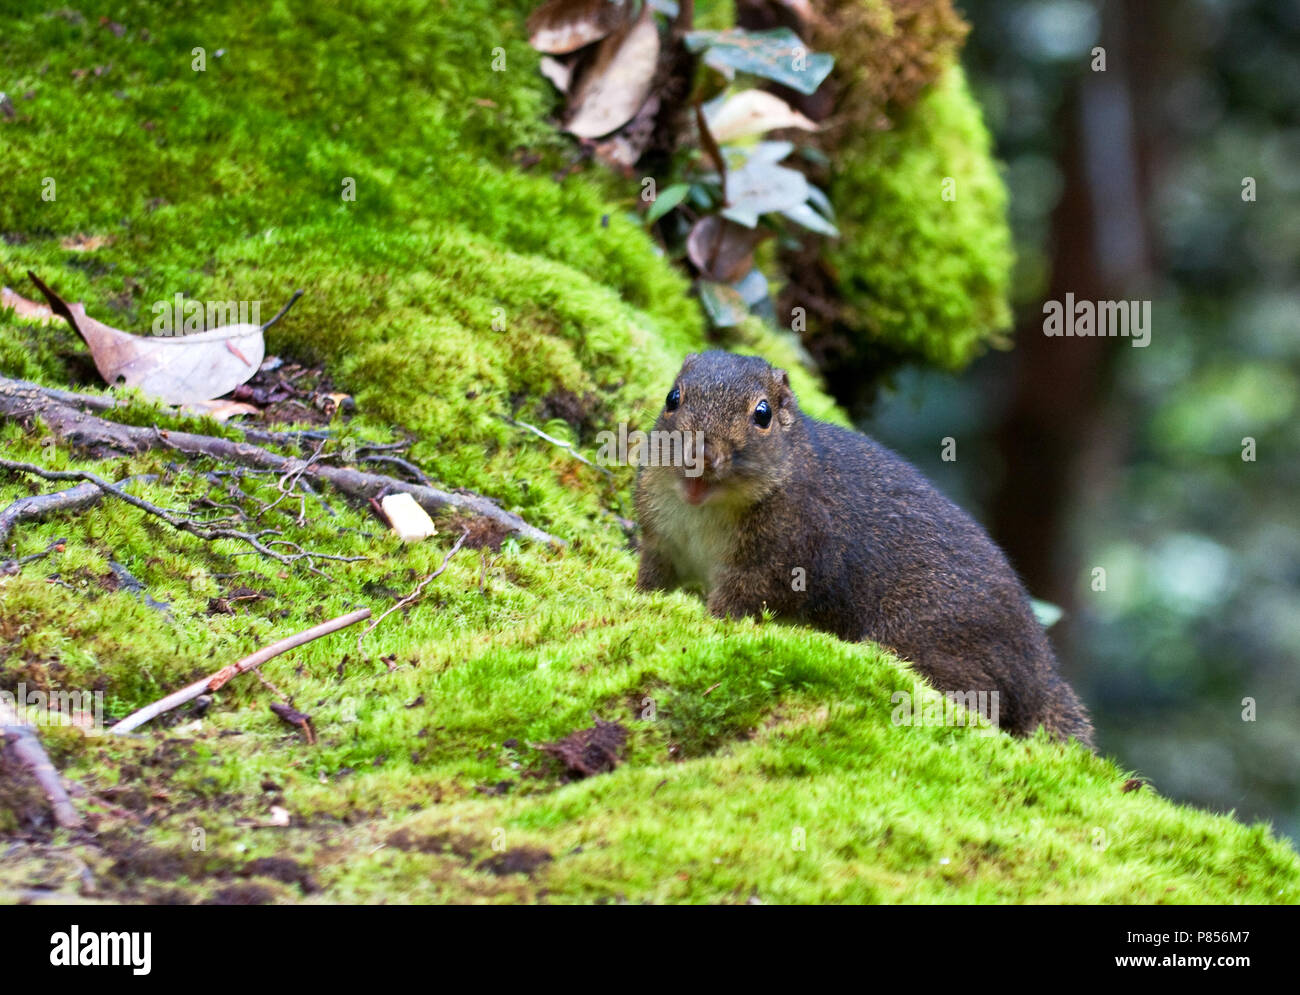 Bornean Mountain Ground Squirrel Stock Photo